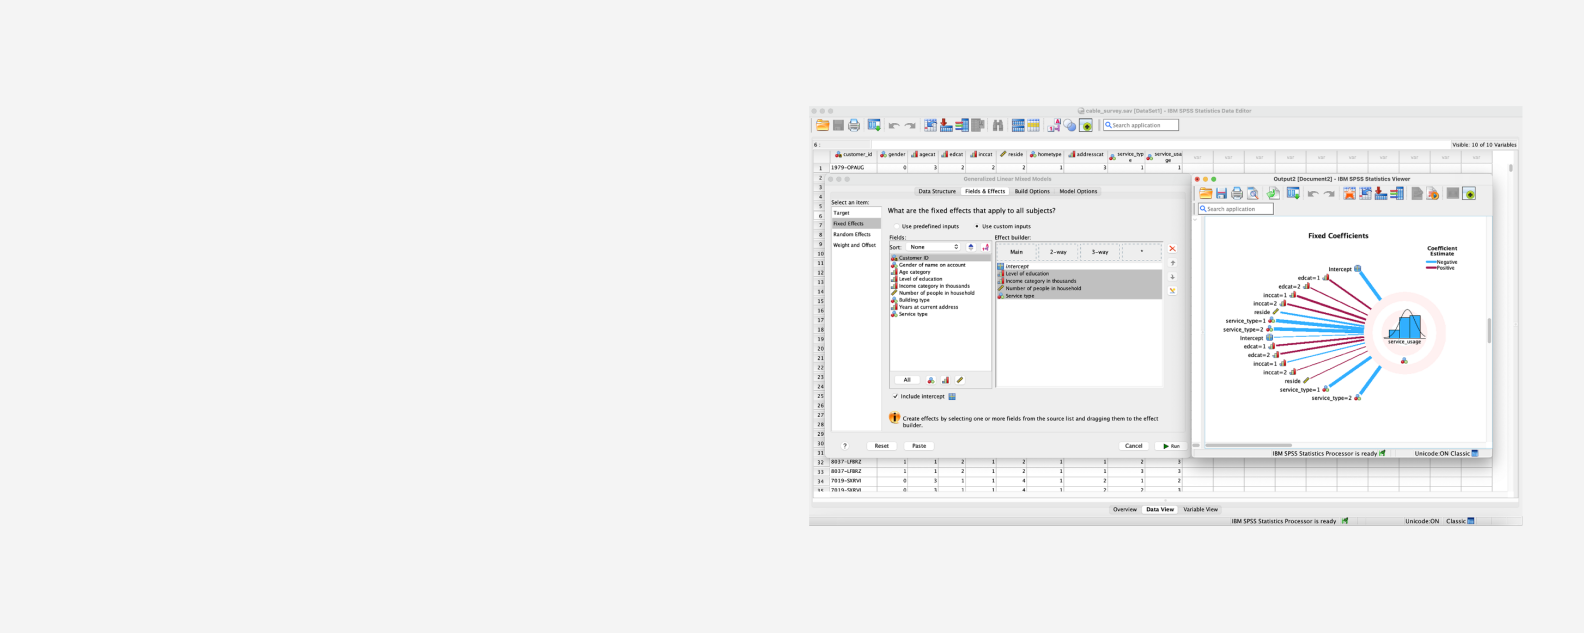 Captura de pantalla de la interfaz de usuario (IU) de SPSS